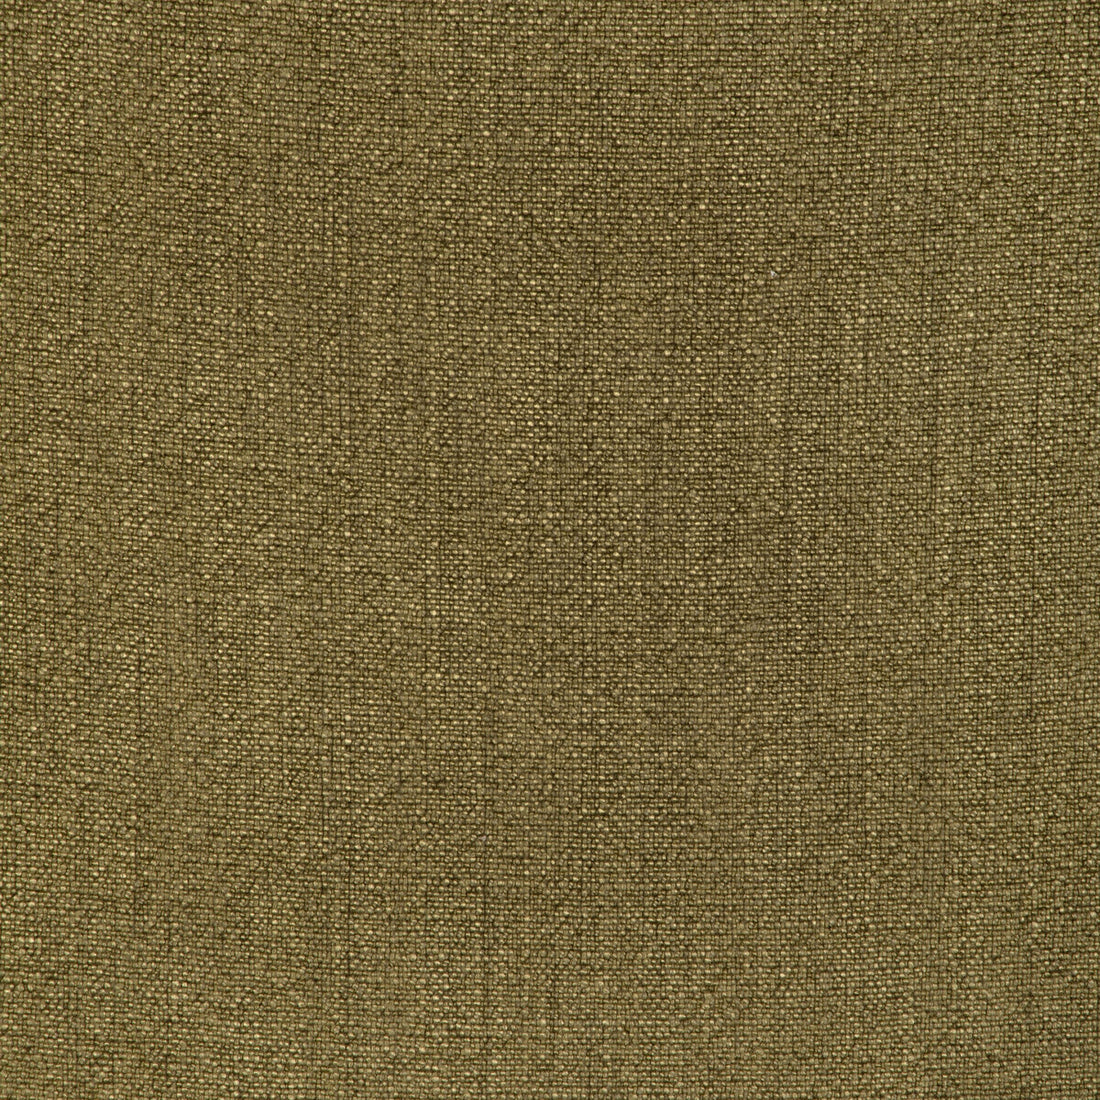 Kravet Basics fabric in 35189-314 color - pattern 35189.314.0 - by Kravet Basics